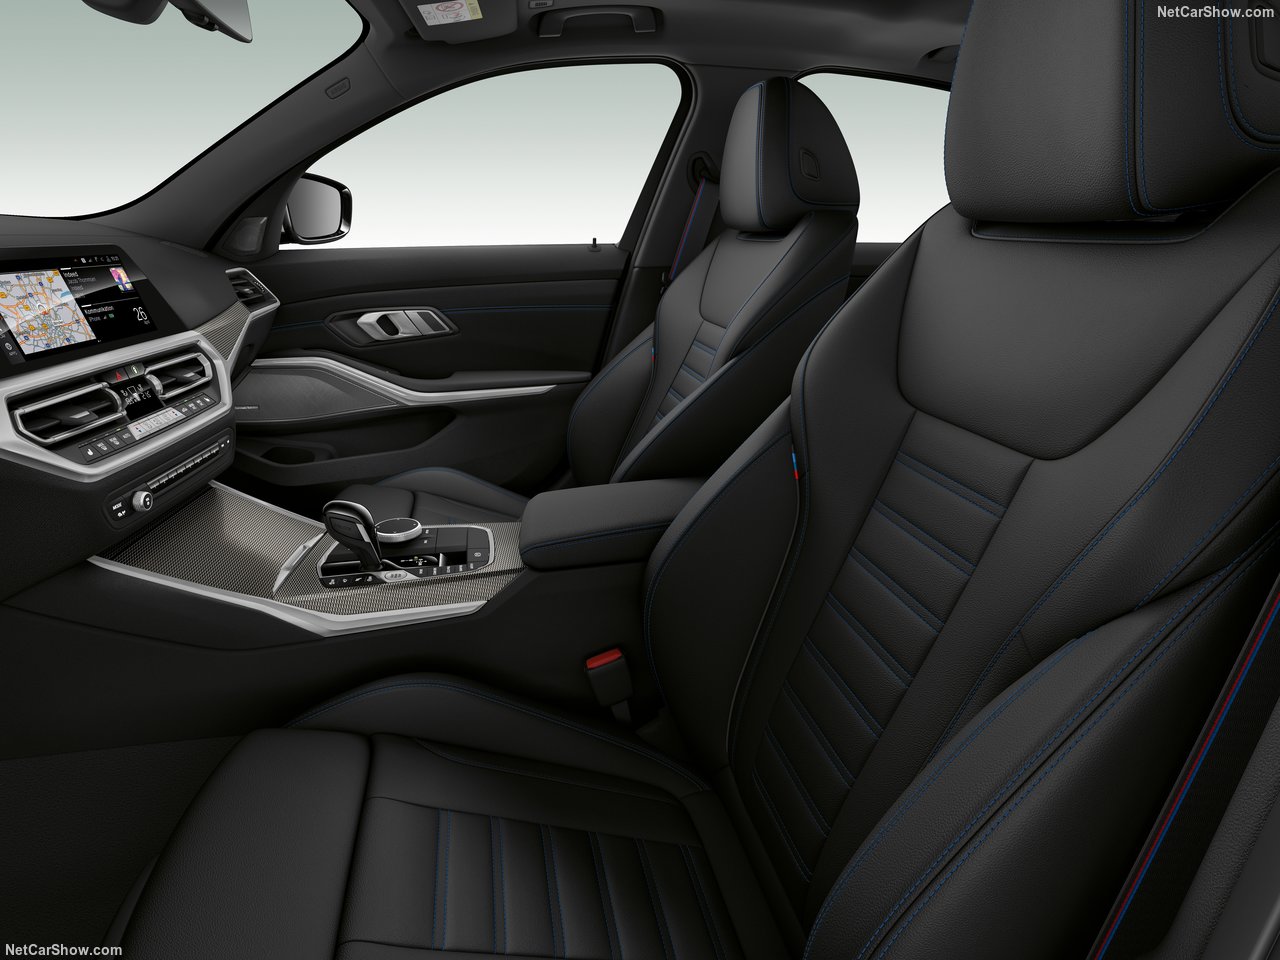 2020 BMW M340i xDrive Sedan ortaya çıktı! Yeni BMW M340i xDrive Sedan’ın özellikleri neler?